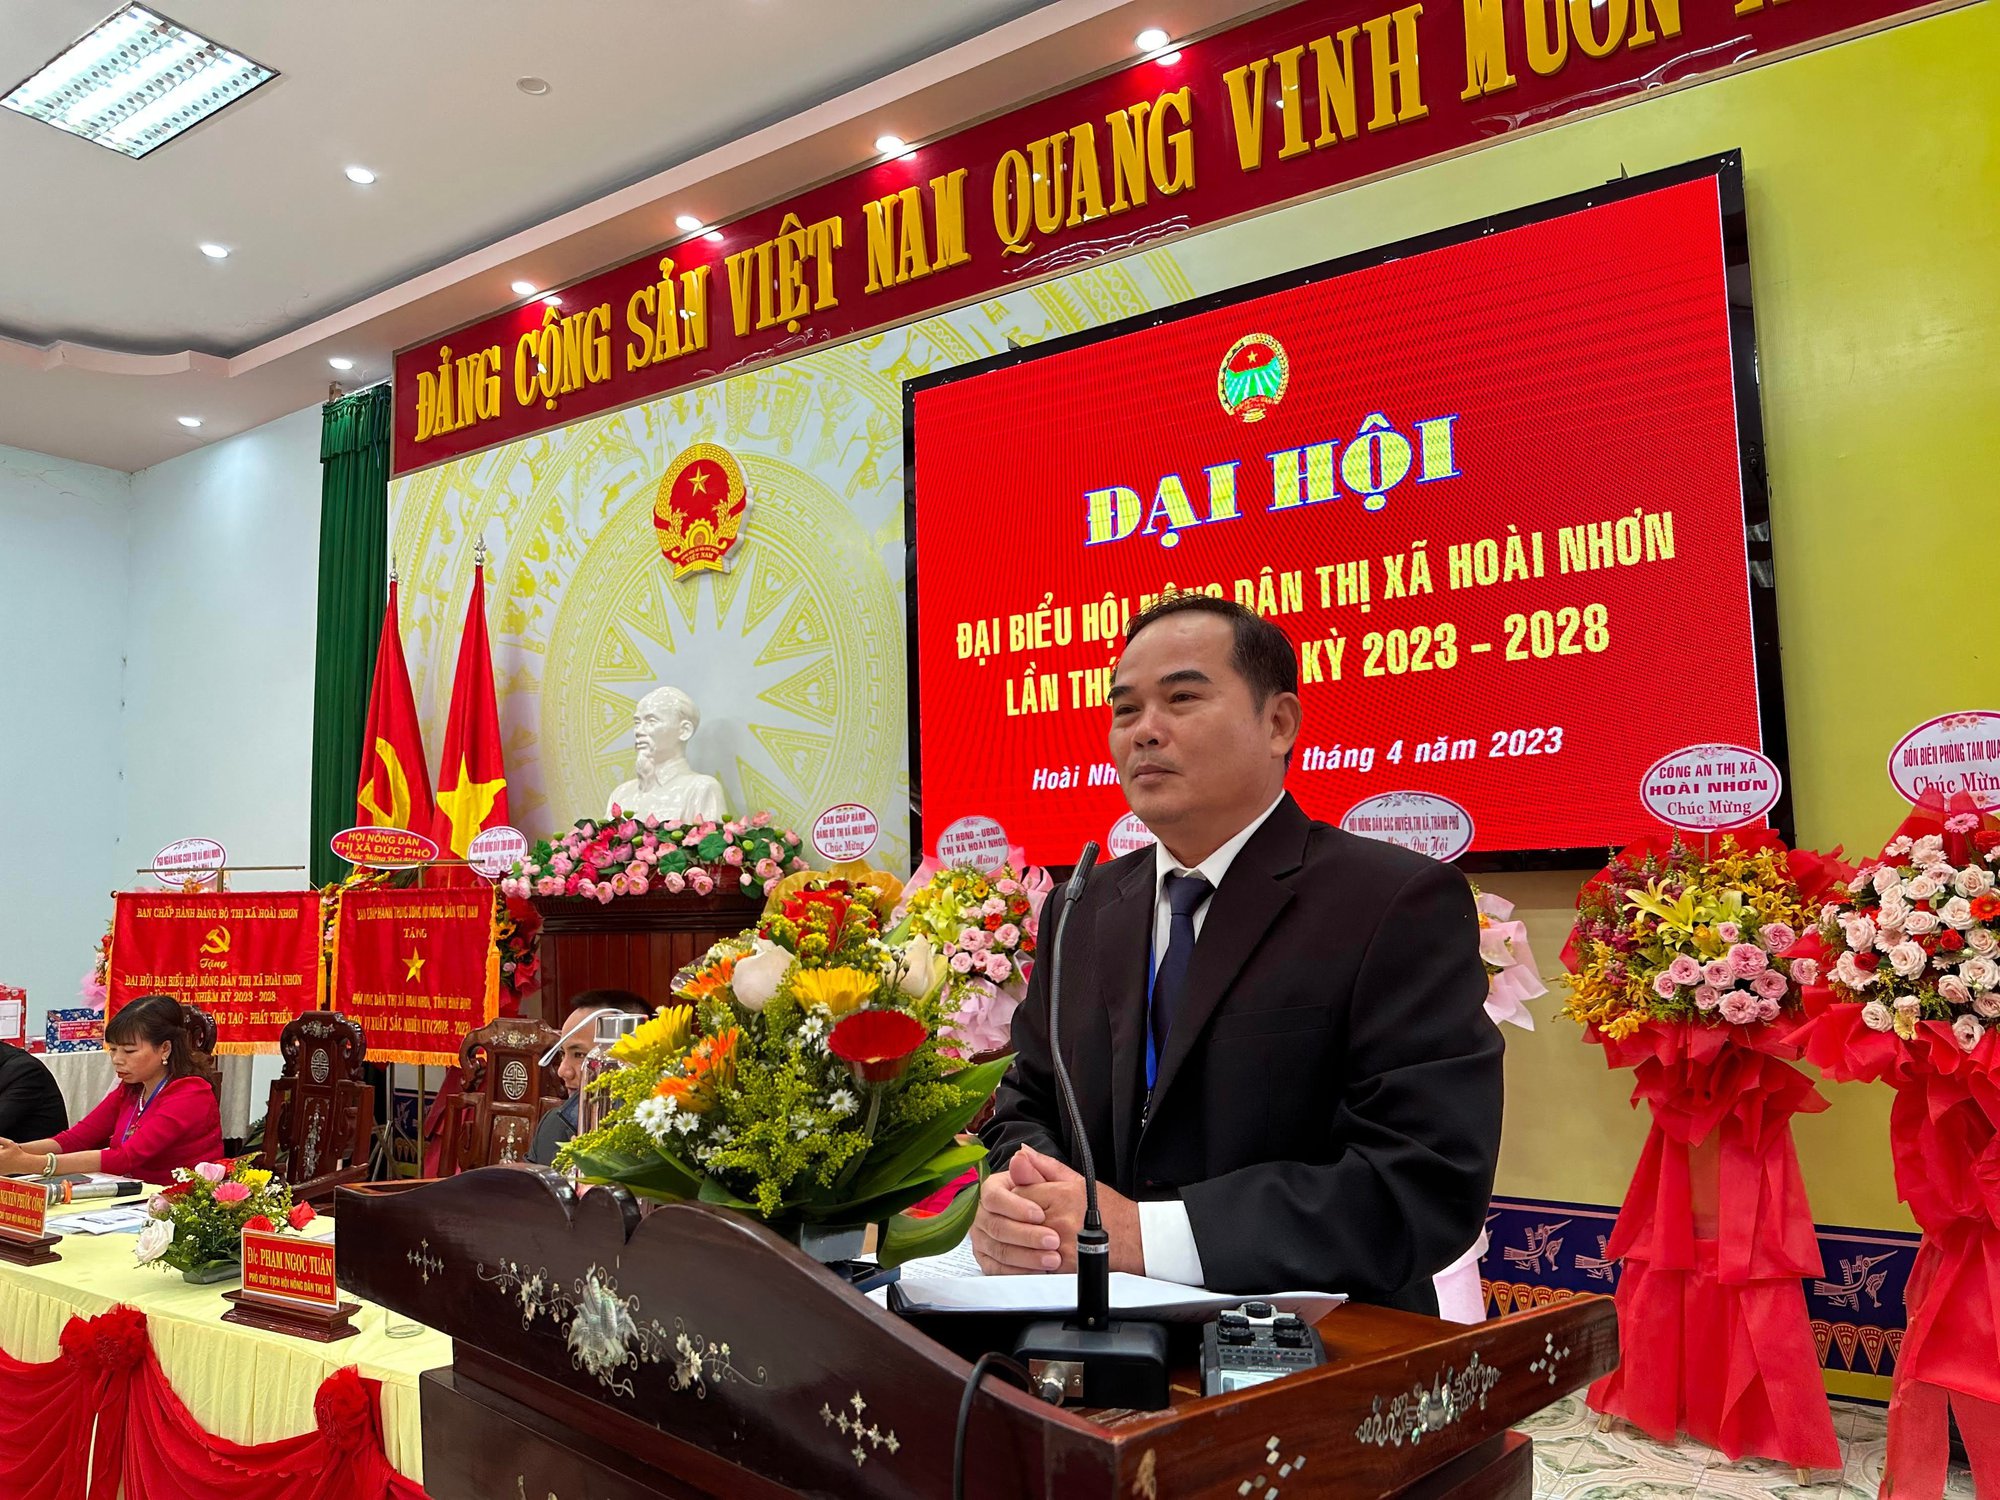 Bình Định: Đại hội Hội Nông dân TX Hoài Nhơn, ông Nguyễn Phước Công tái đắc cử chức Chủ tịch Hội - Ảnh 4.